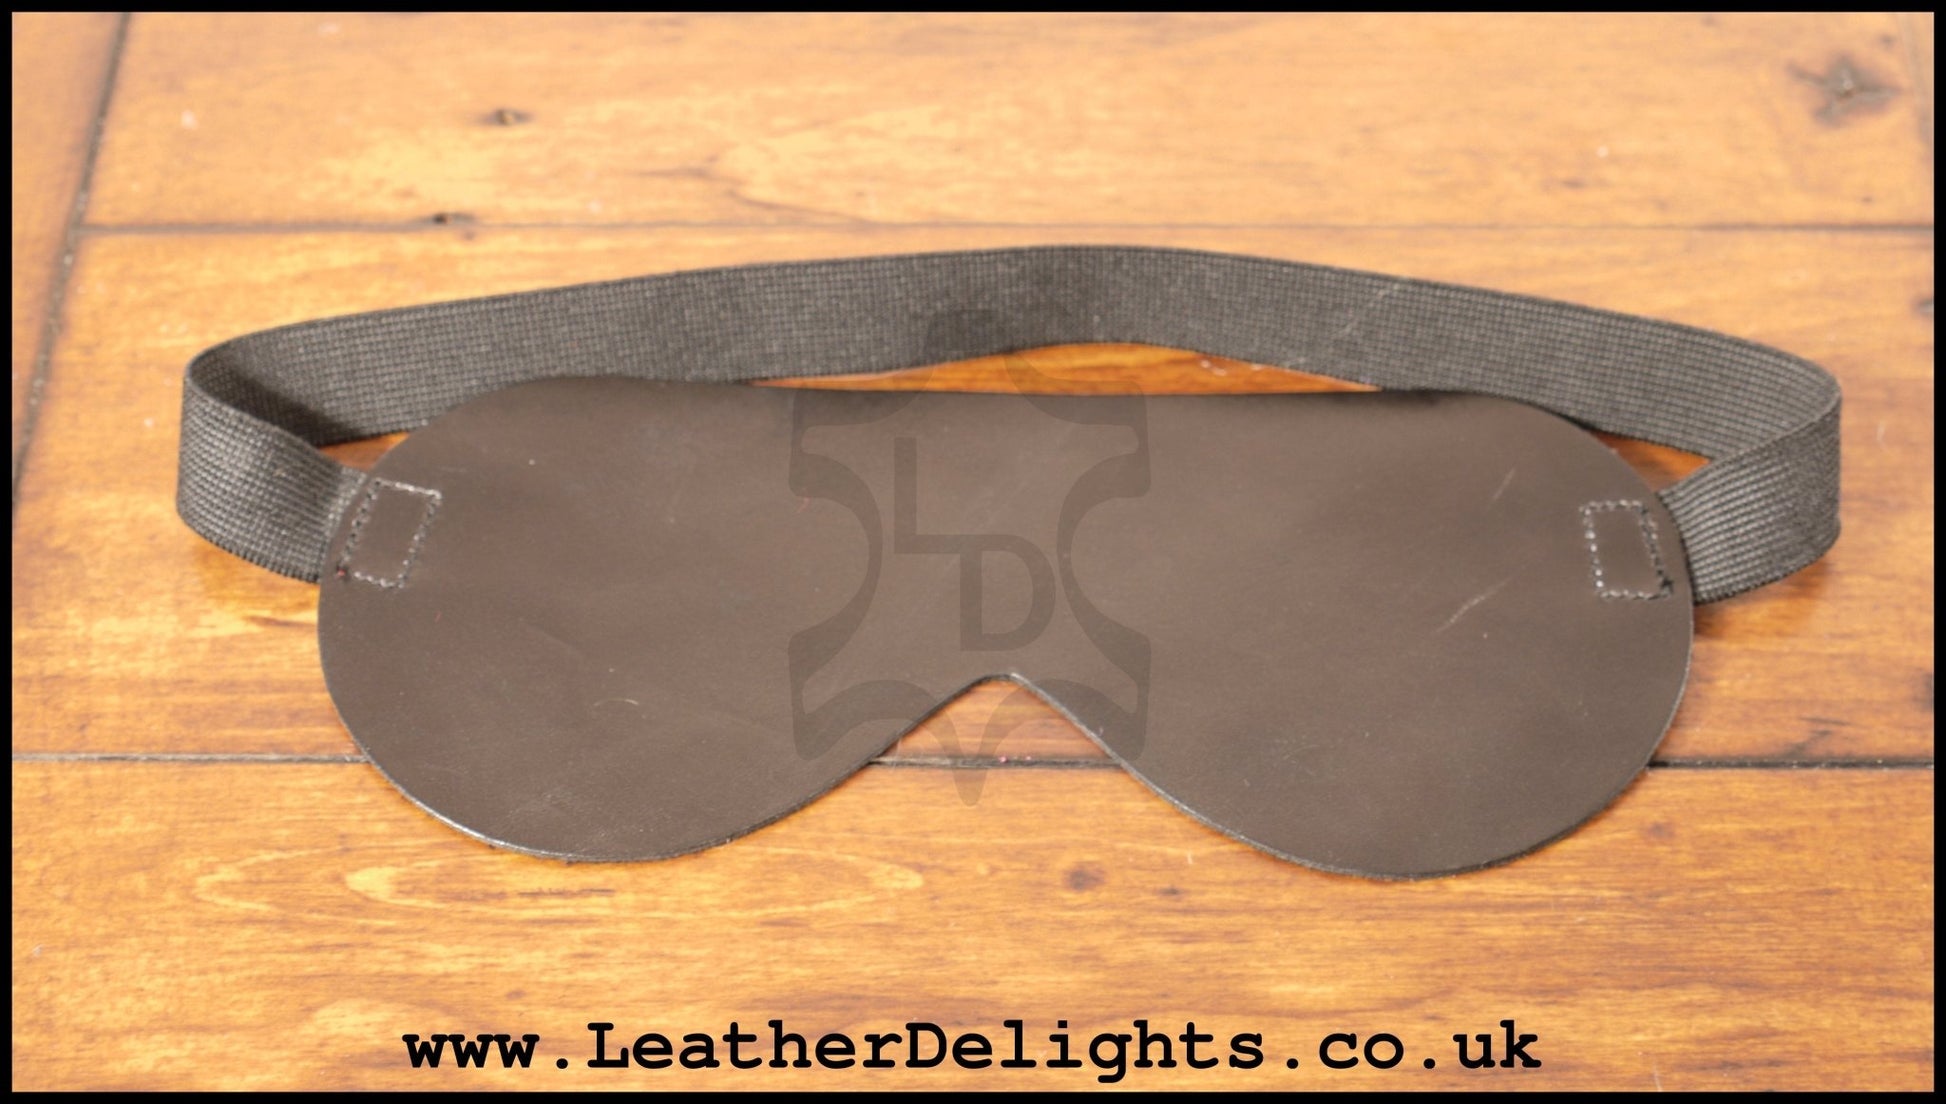 Basic Blindfold - Leather Delights